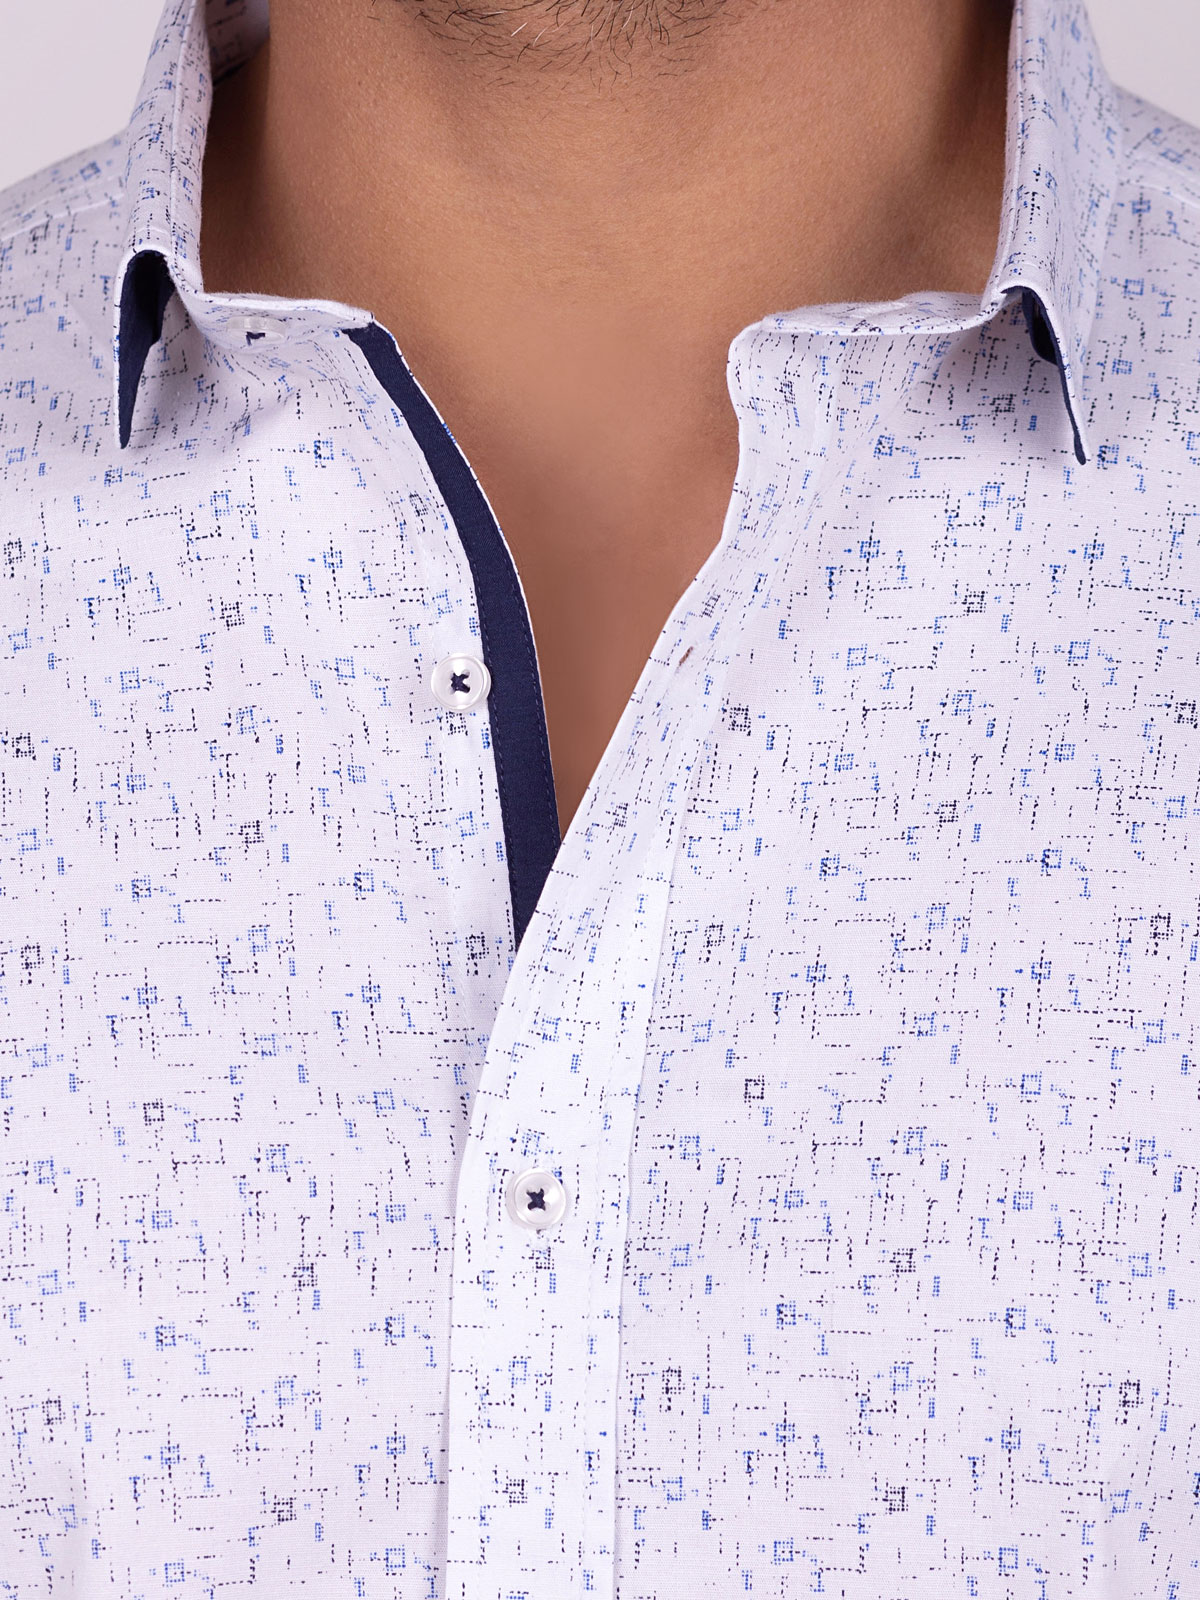 Бяла риза с принт на сини фигури - 21515 78.00 лв img3